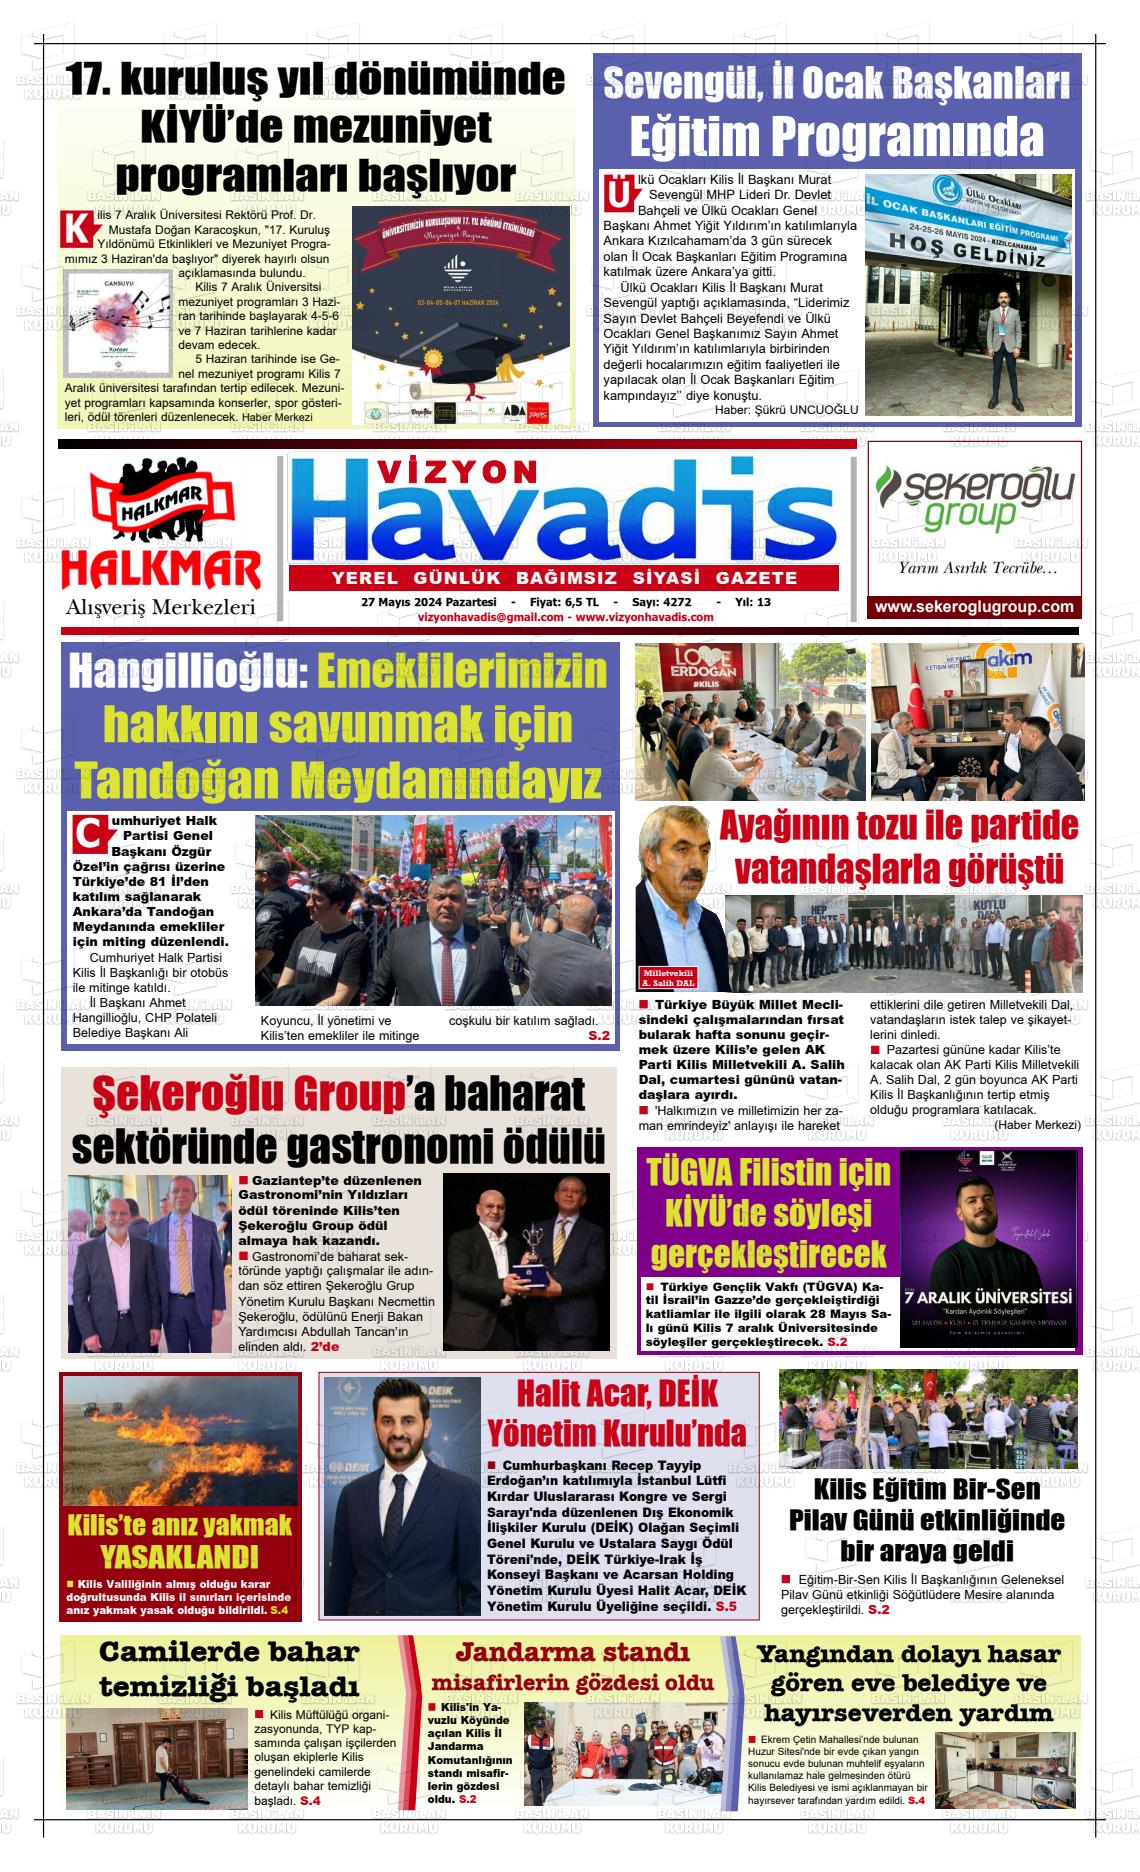 VİZYON HAVADİS Gazetesi